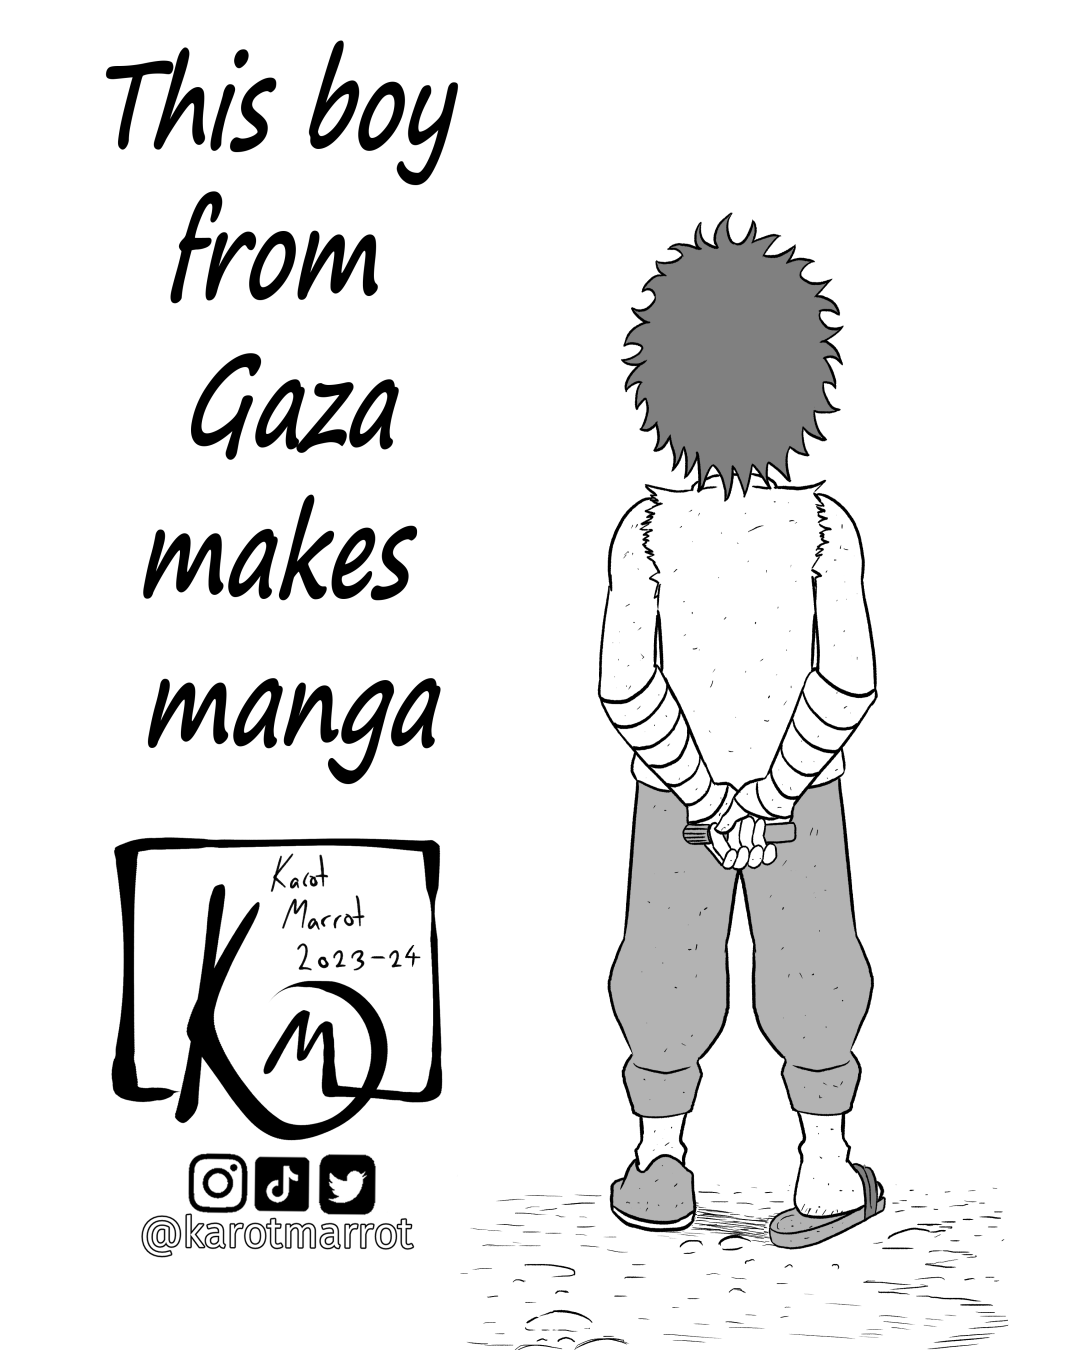 This boy from Gaza makes manga thumbnail